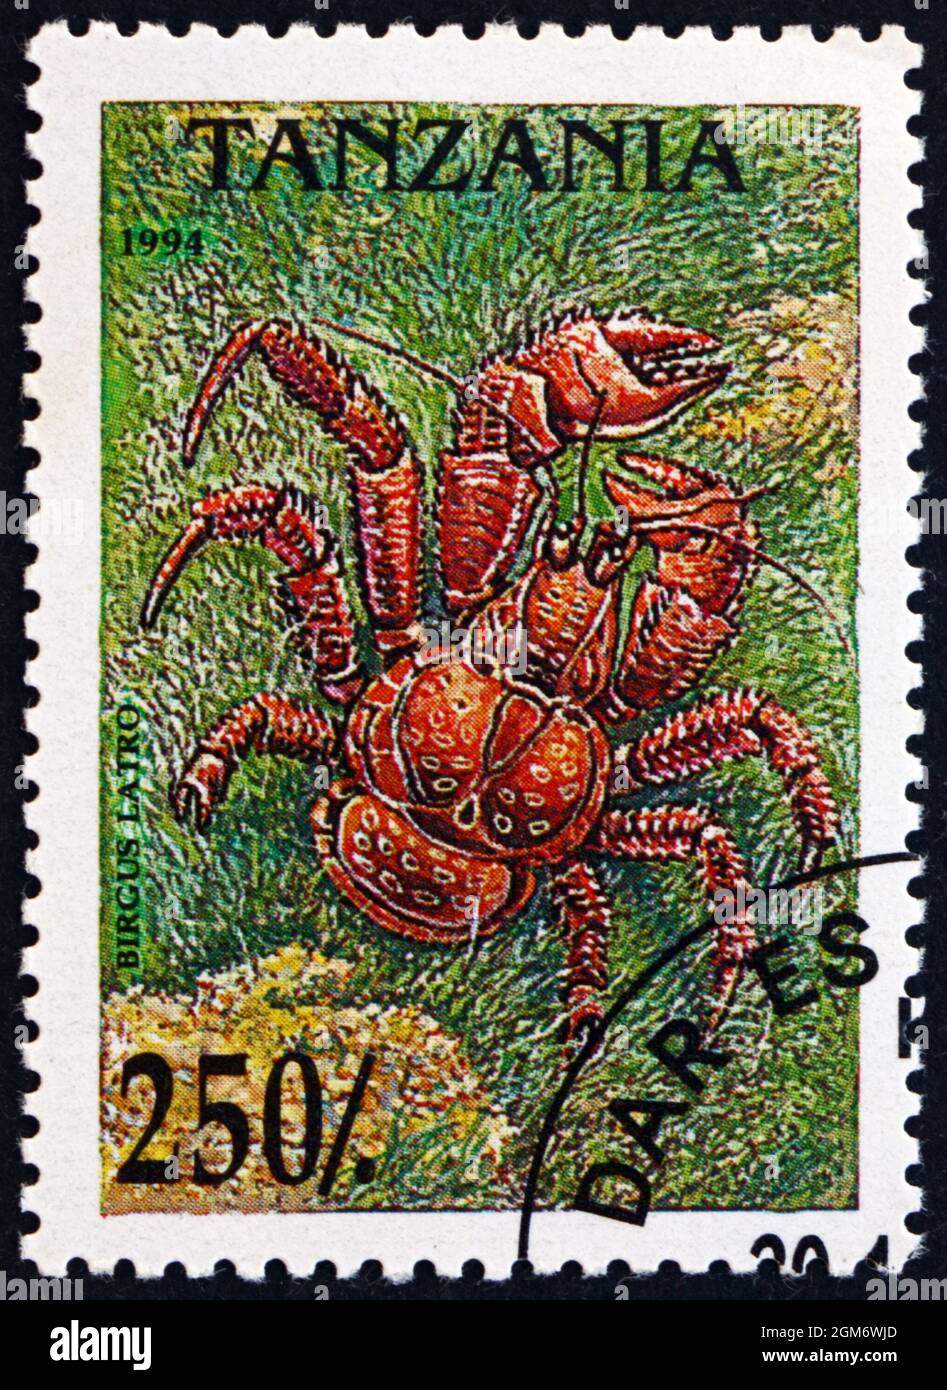 TANSANIA - UM 1994: Eine in Tansania gedruckte Briefmarke zeigt die Kokosnuss-Krabbe, Birgus latro, ist die größte landlebende Arthropode der Welt, um 1994 Stockfoto